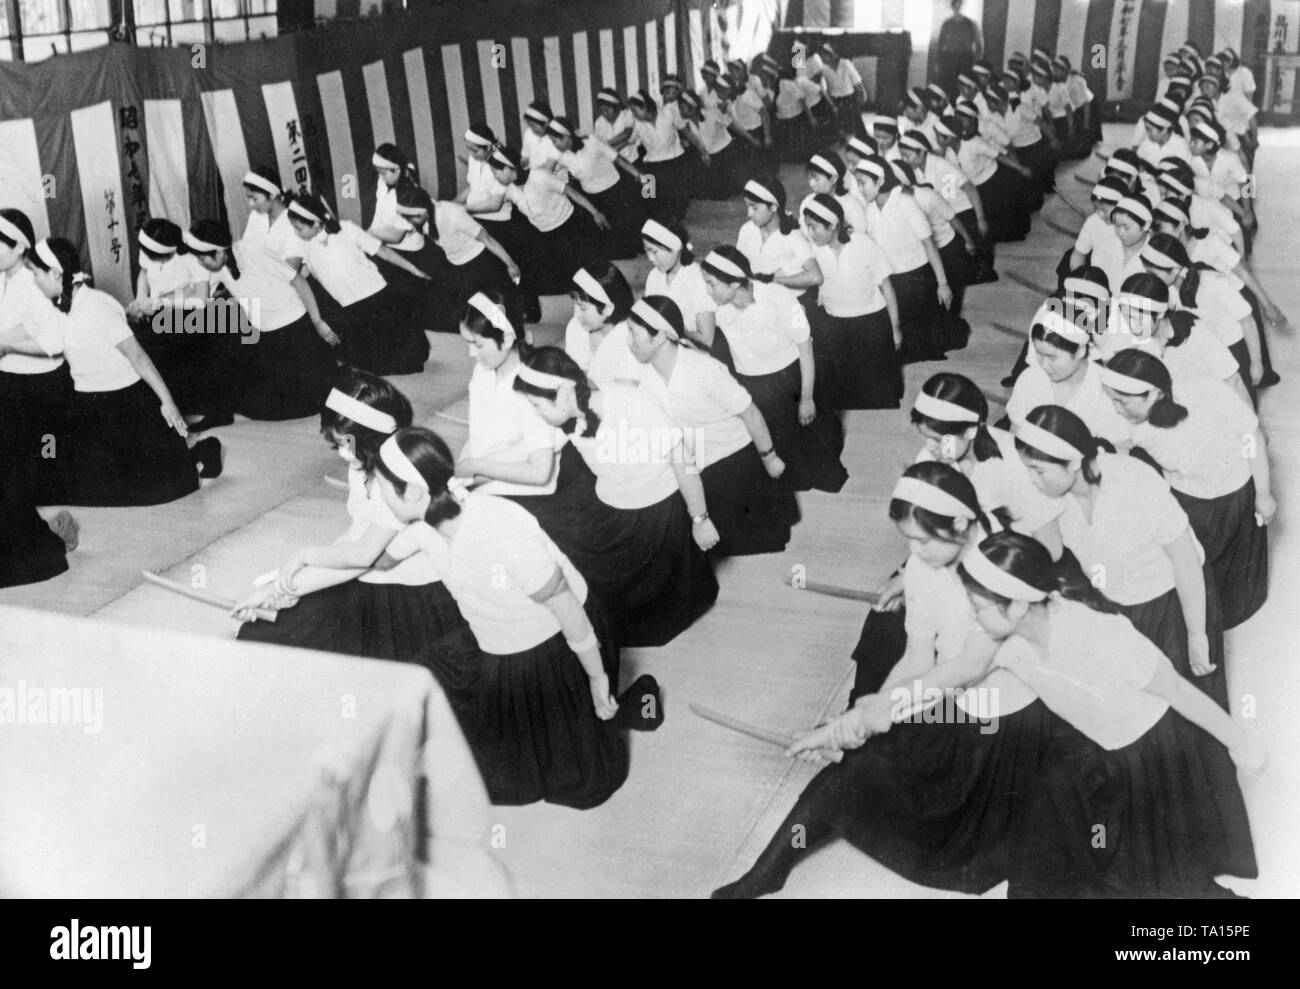 Eine Klasse ist ein Mädchen Schule in Tokio an der Jiu-Jitsu-Klasse. (Undatiert Bild, Ca. 1930s) Stockfoto